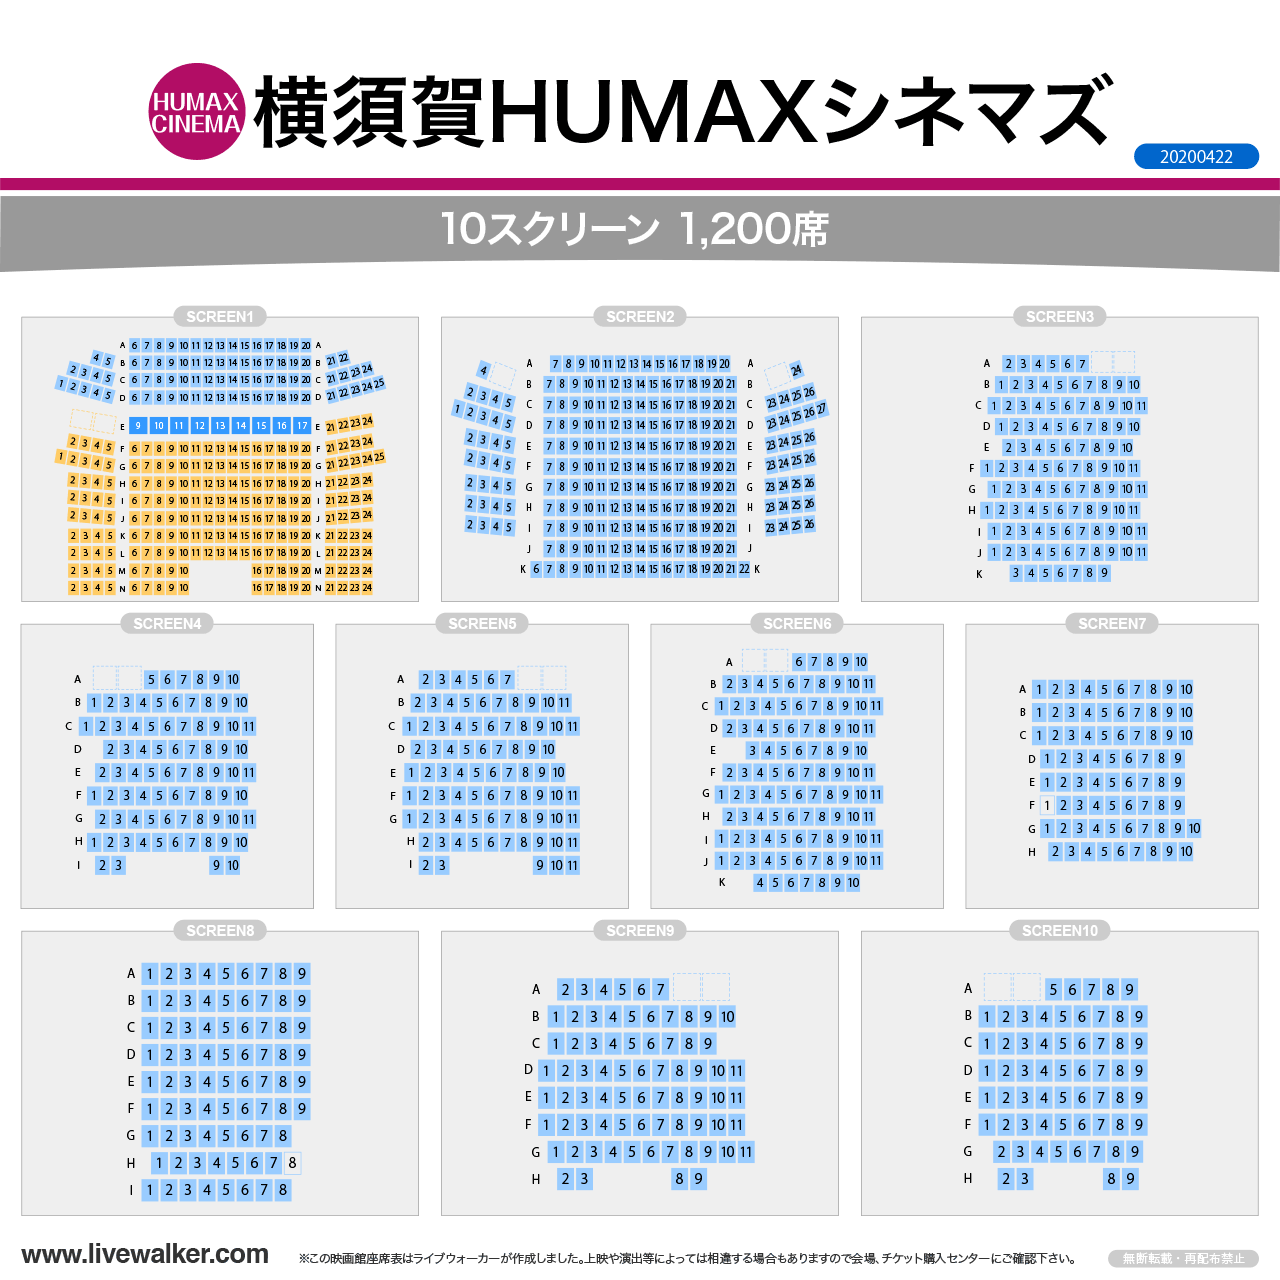 横須賀HUMAXシネマズシネマの座席表